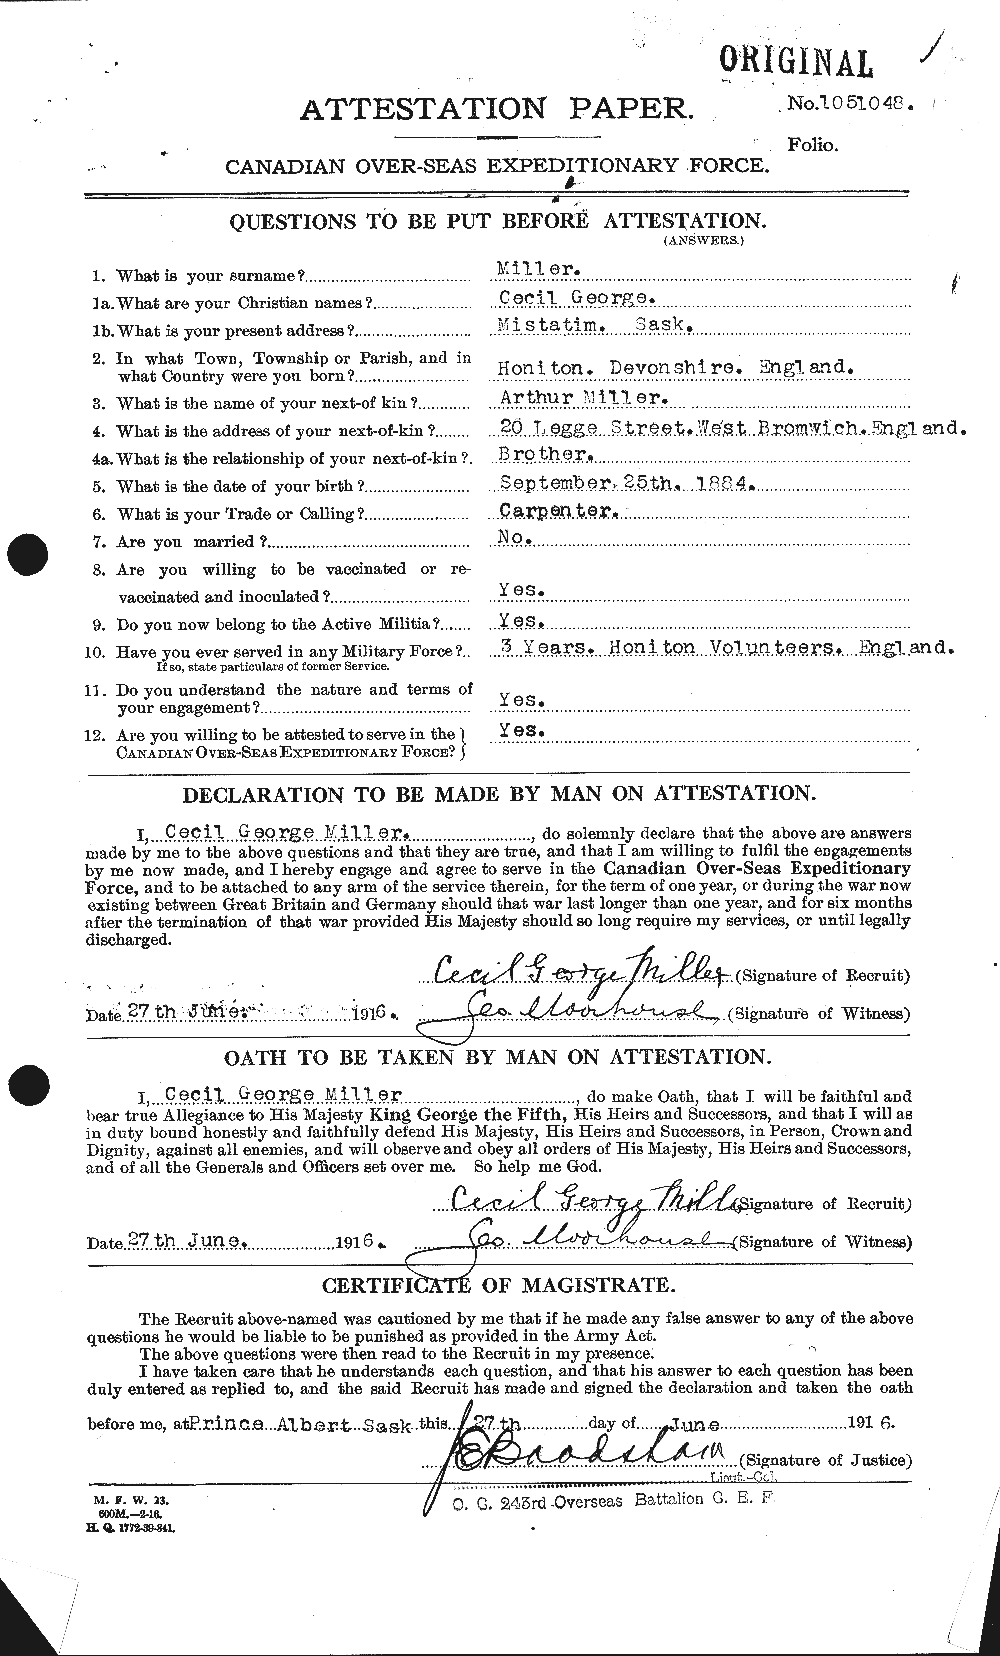 Dossiers du Personnel de la Première Guerre mondiale - CEC 498774a